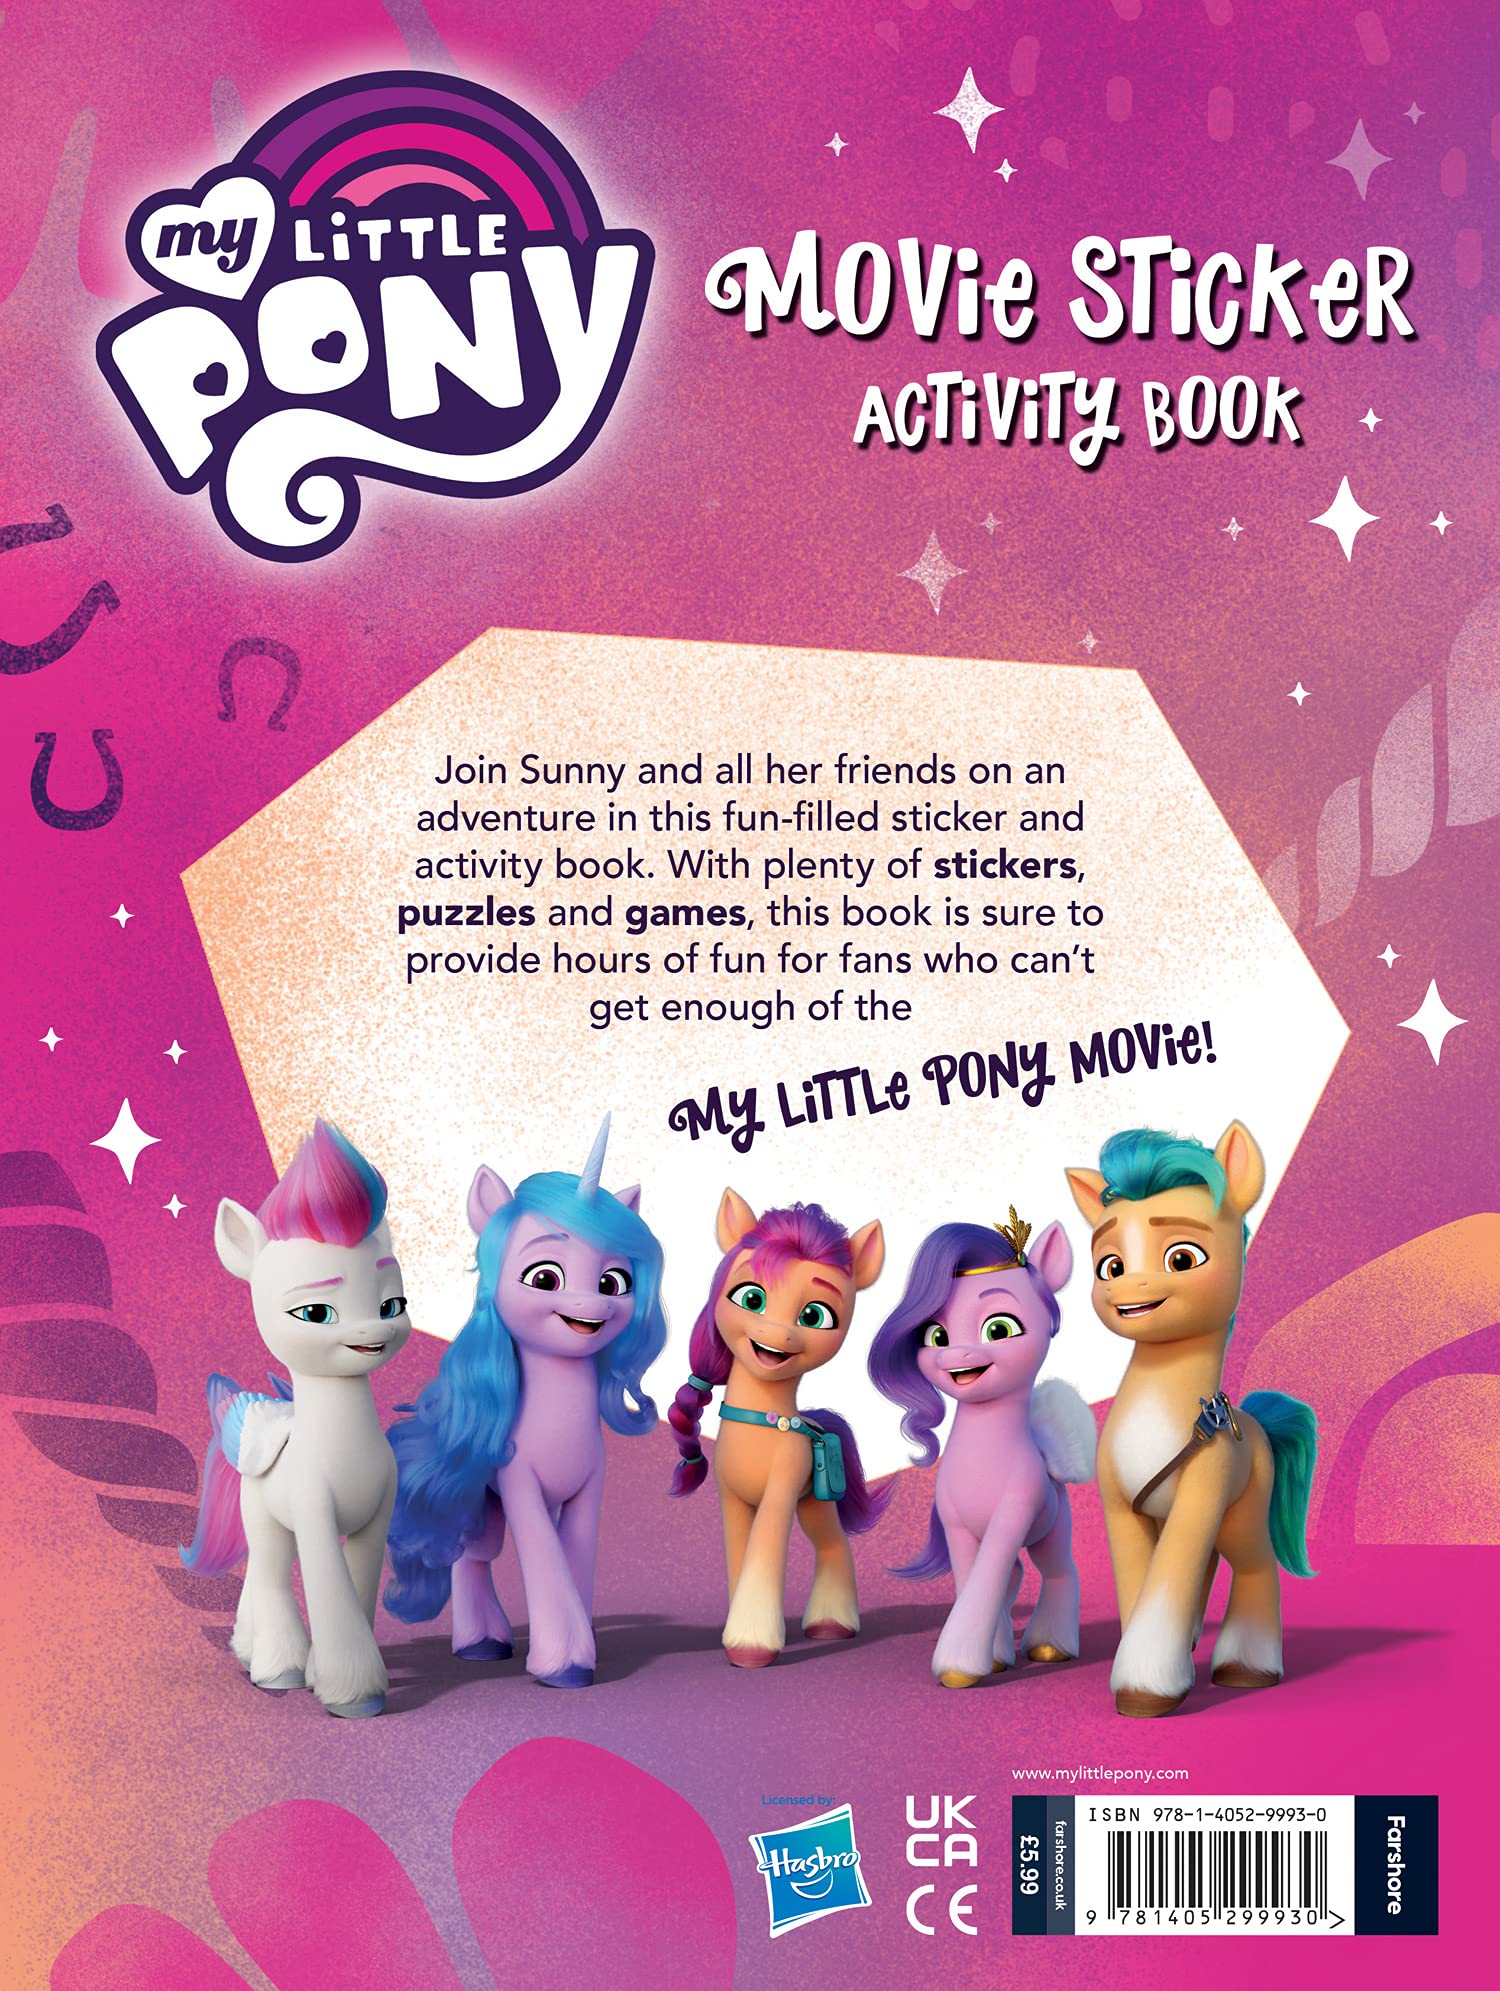 My Little Pony Movie Sticker Activity Book G5 Movie